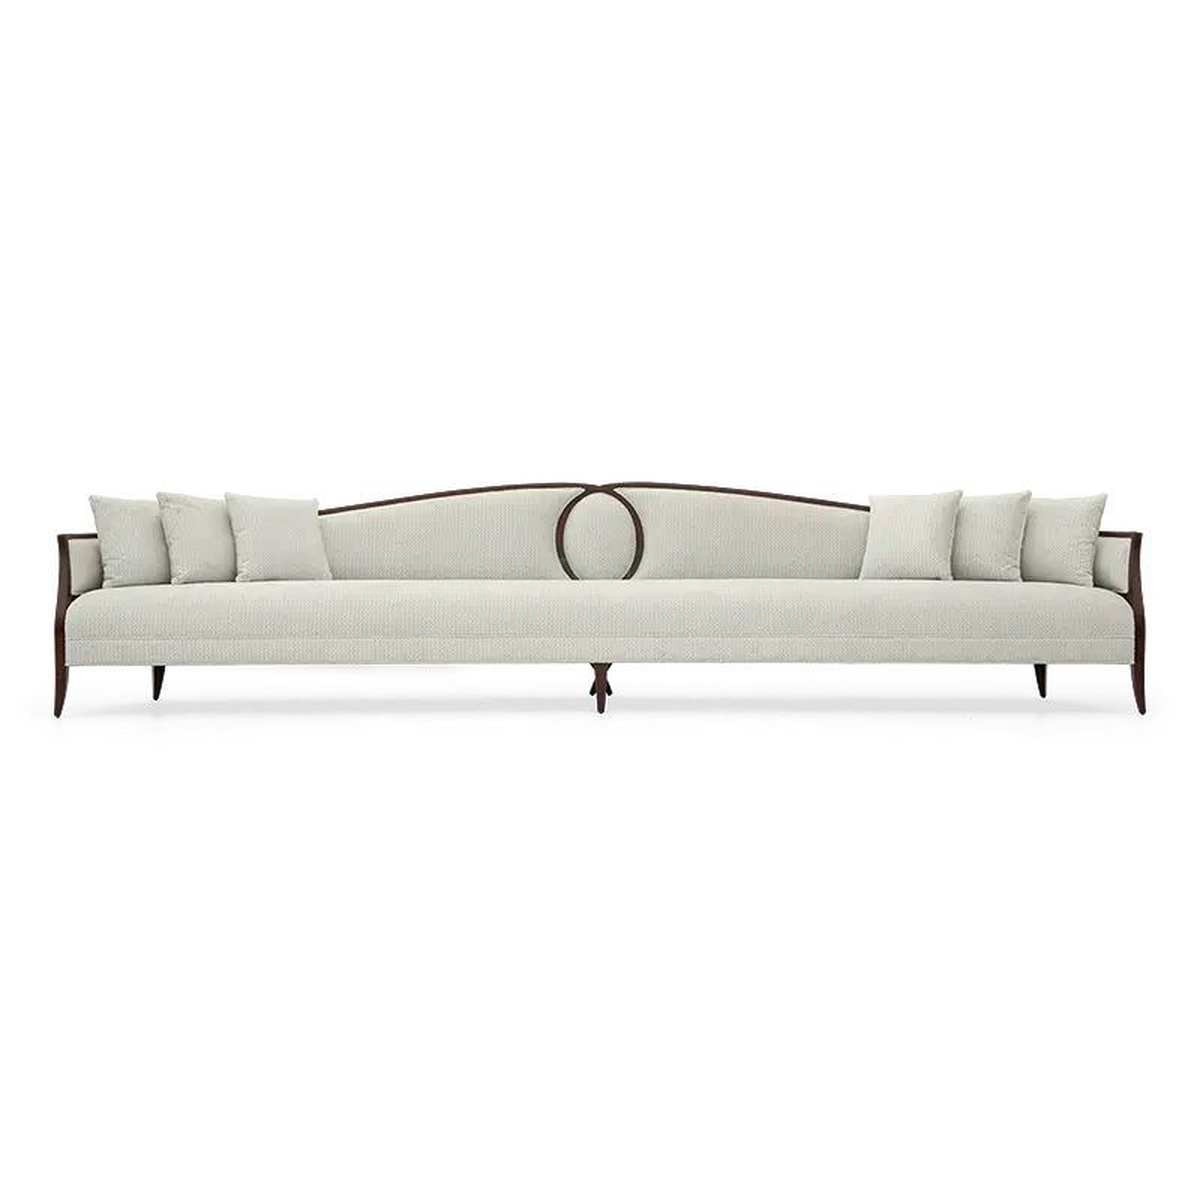 Прямой диван Feraud sofa  из США фабрики CHRISTOPHER GUY